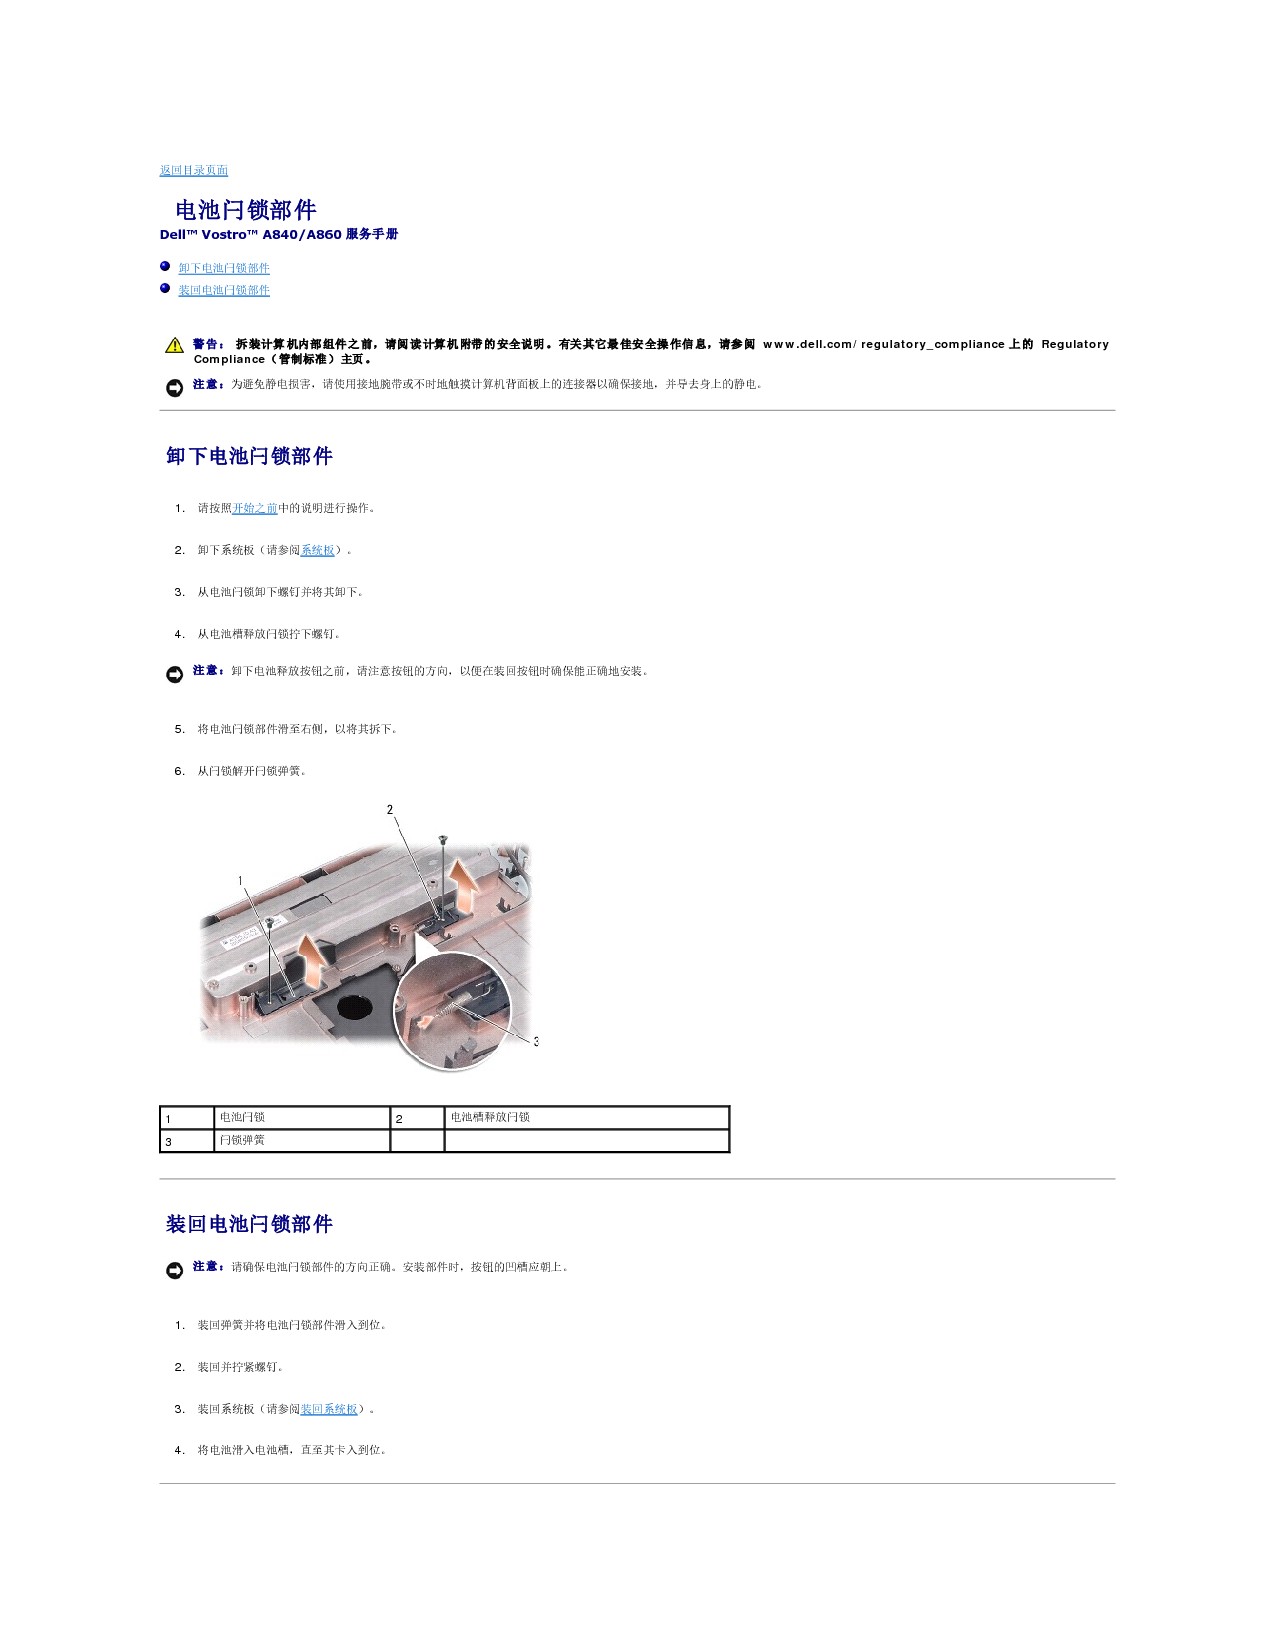 戴尔 Dell Vostro A840 维修服务手册 第2页